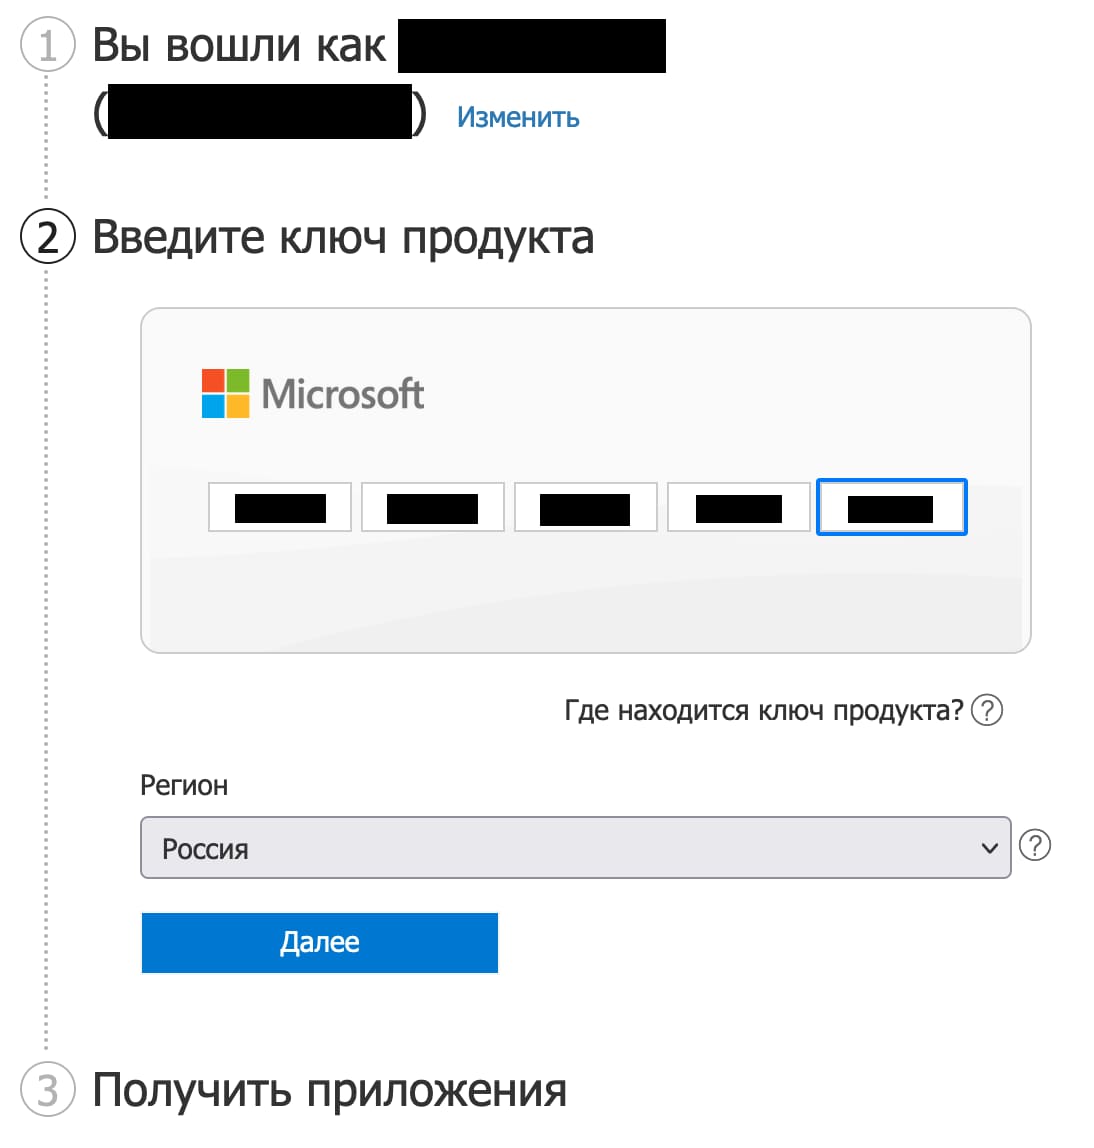 microsoft-office-2021-dlya-mac-aktivatsiya-i-ustanovka